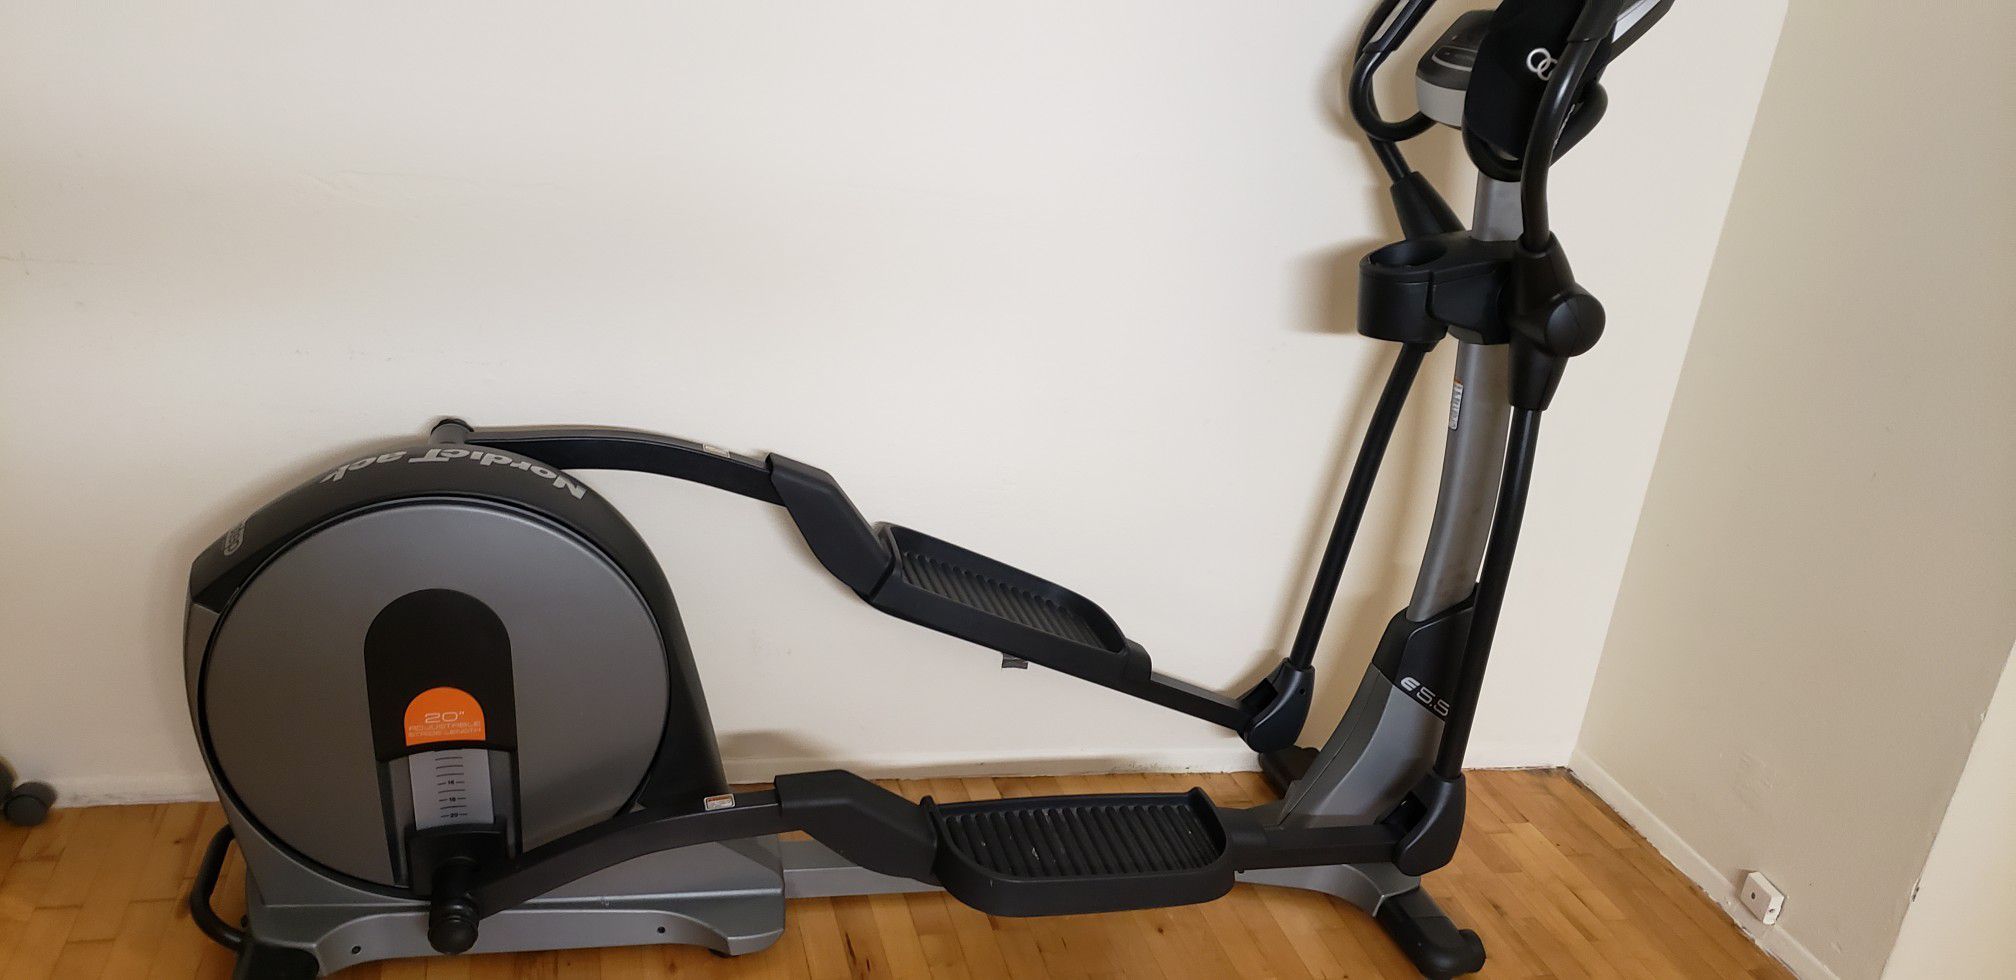 Nordictrack e 5.5 treadmill used